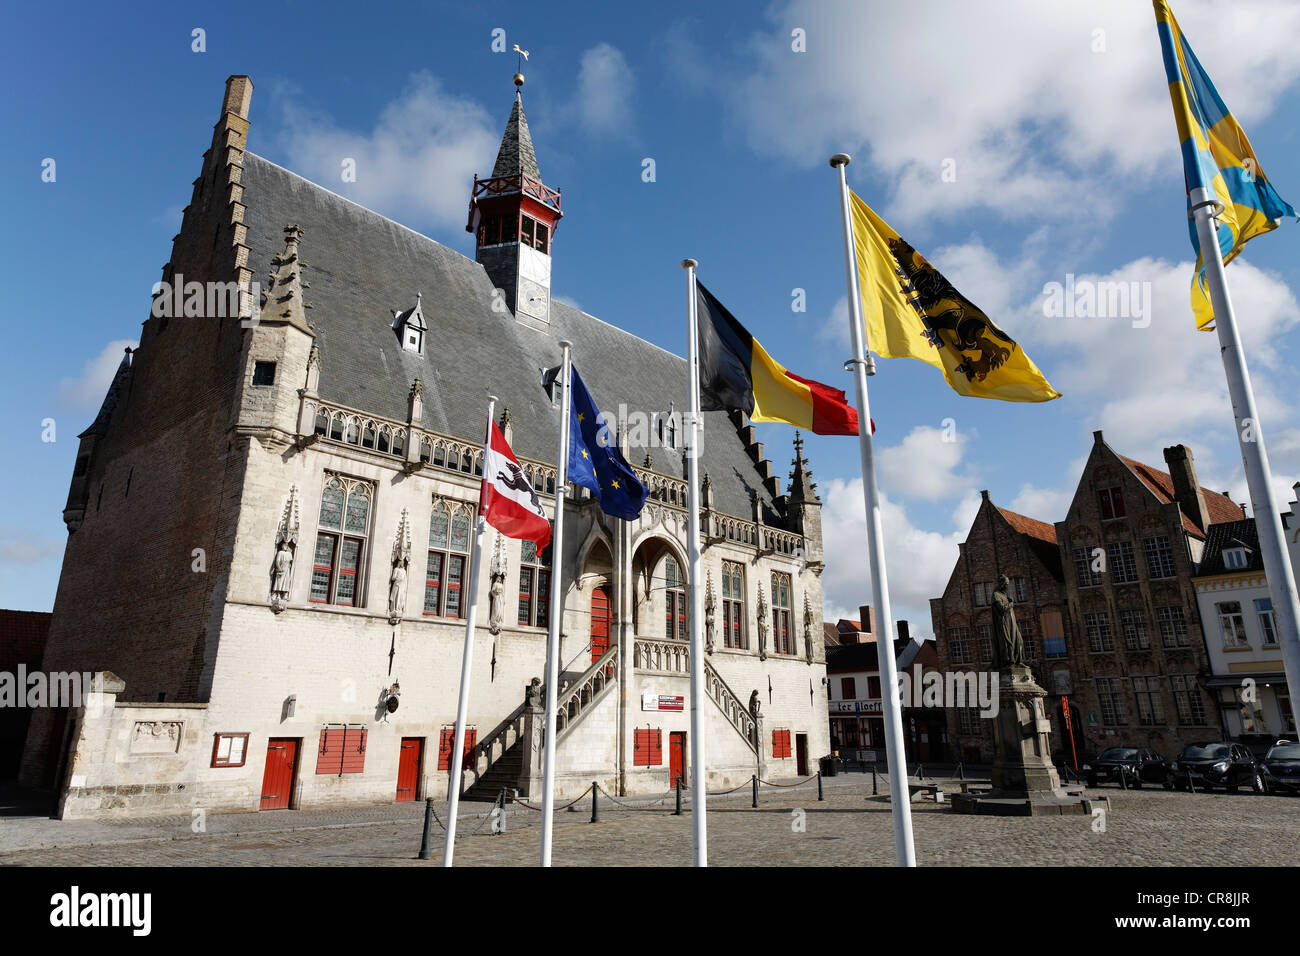 Hôtel de ville historique et d'un mémorial à Jacob van Maerlant, Grote Markt, Damme, Flandre occidentale, Belgique, Europe Banque D'Images